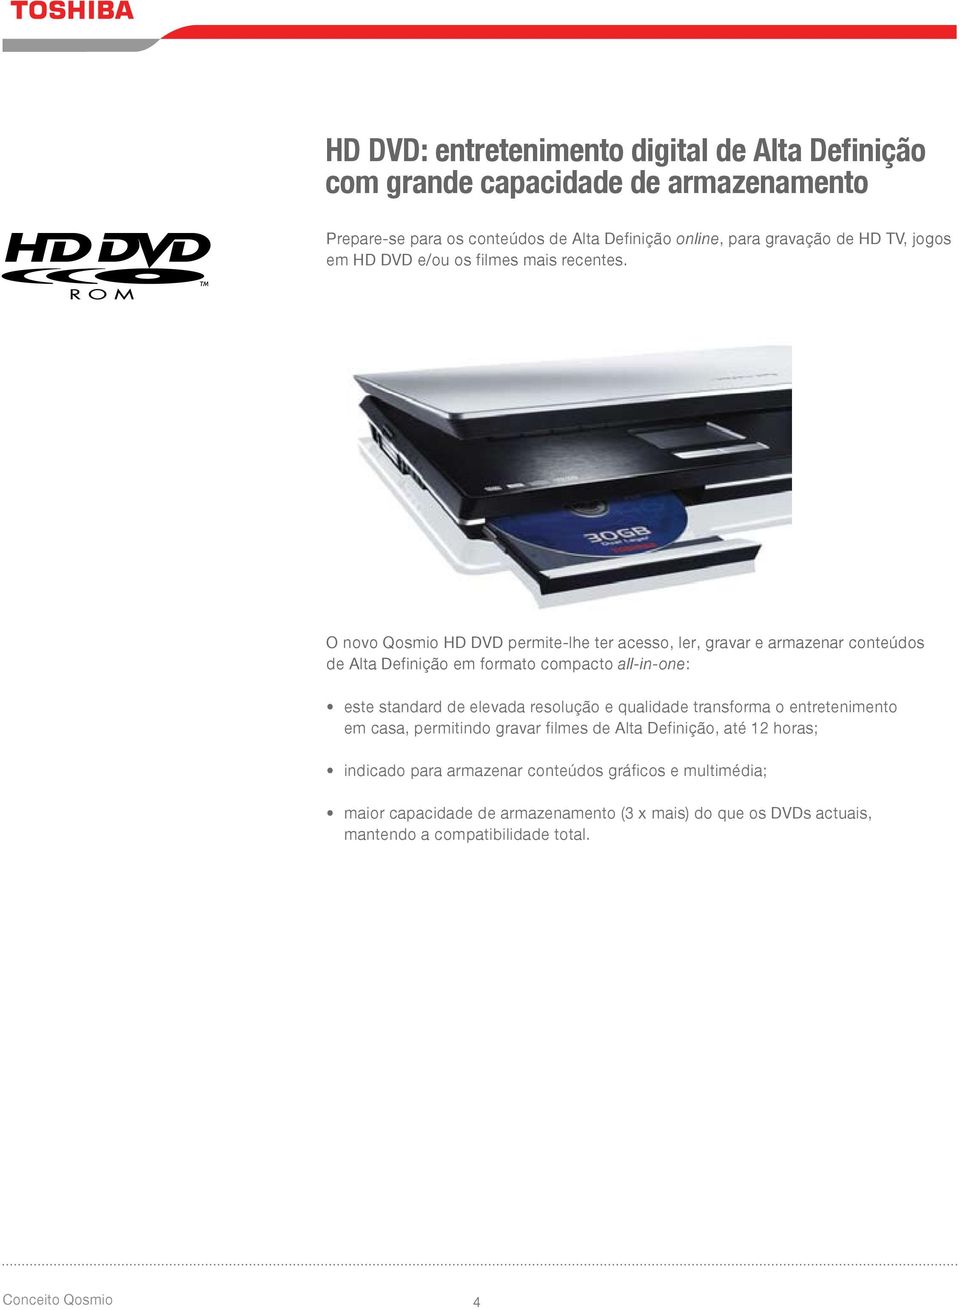 O novo Qosmio HD DVD permite-lhe ter acesso, ler, gravar e armazenar conteúdos de Alta Definição em formato compacto all-in-one: este standard de elevada resolução